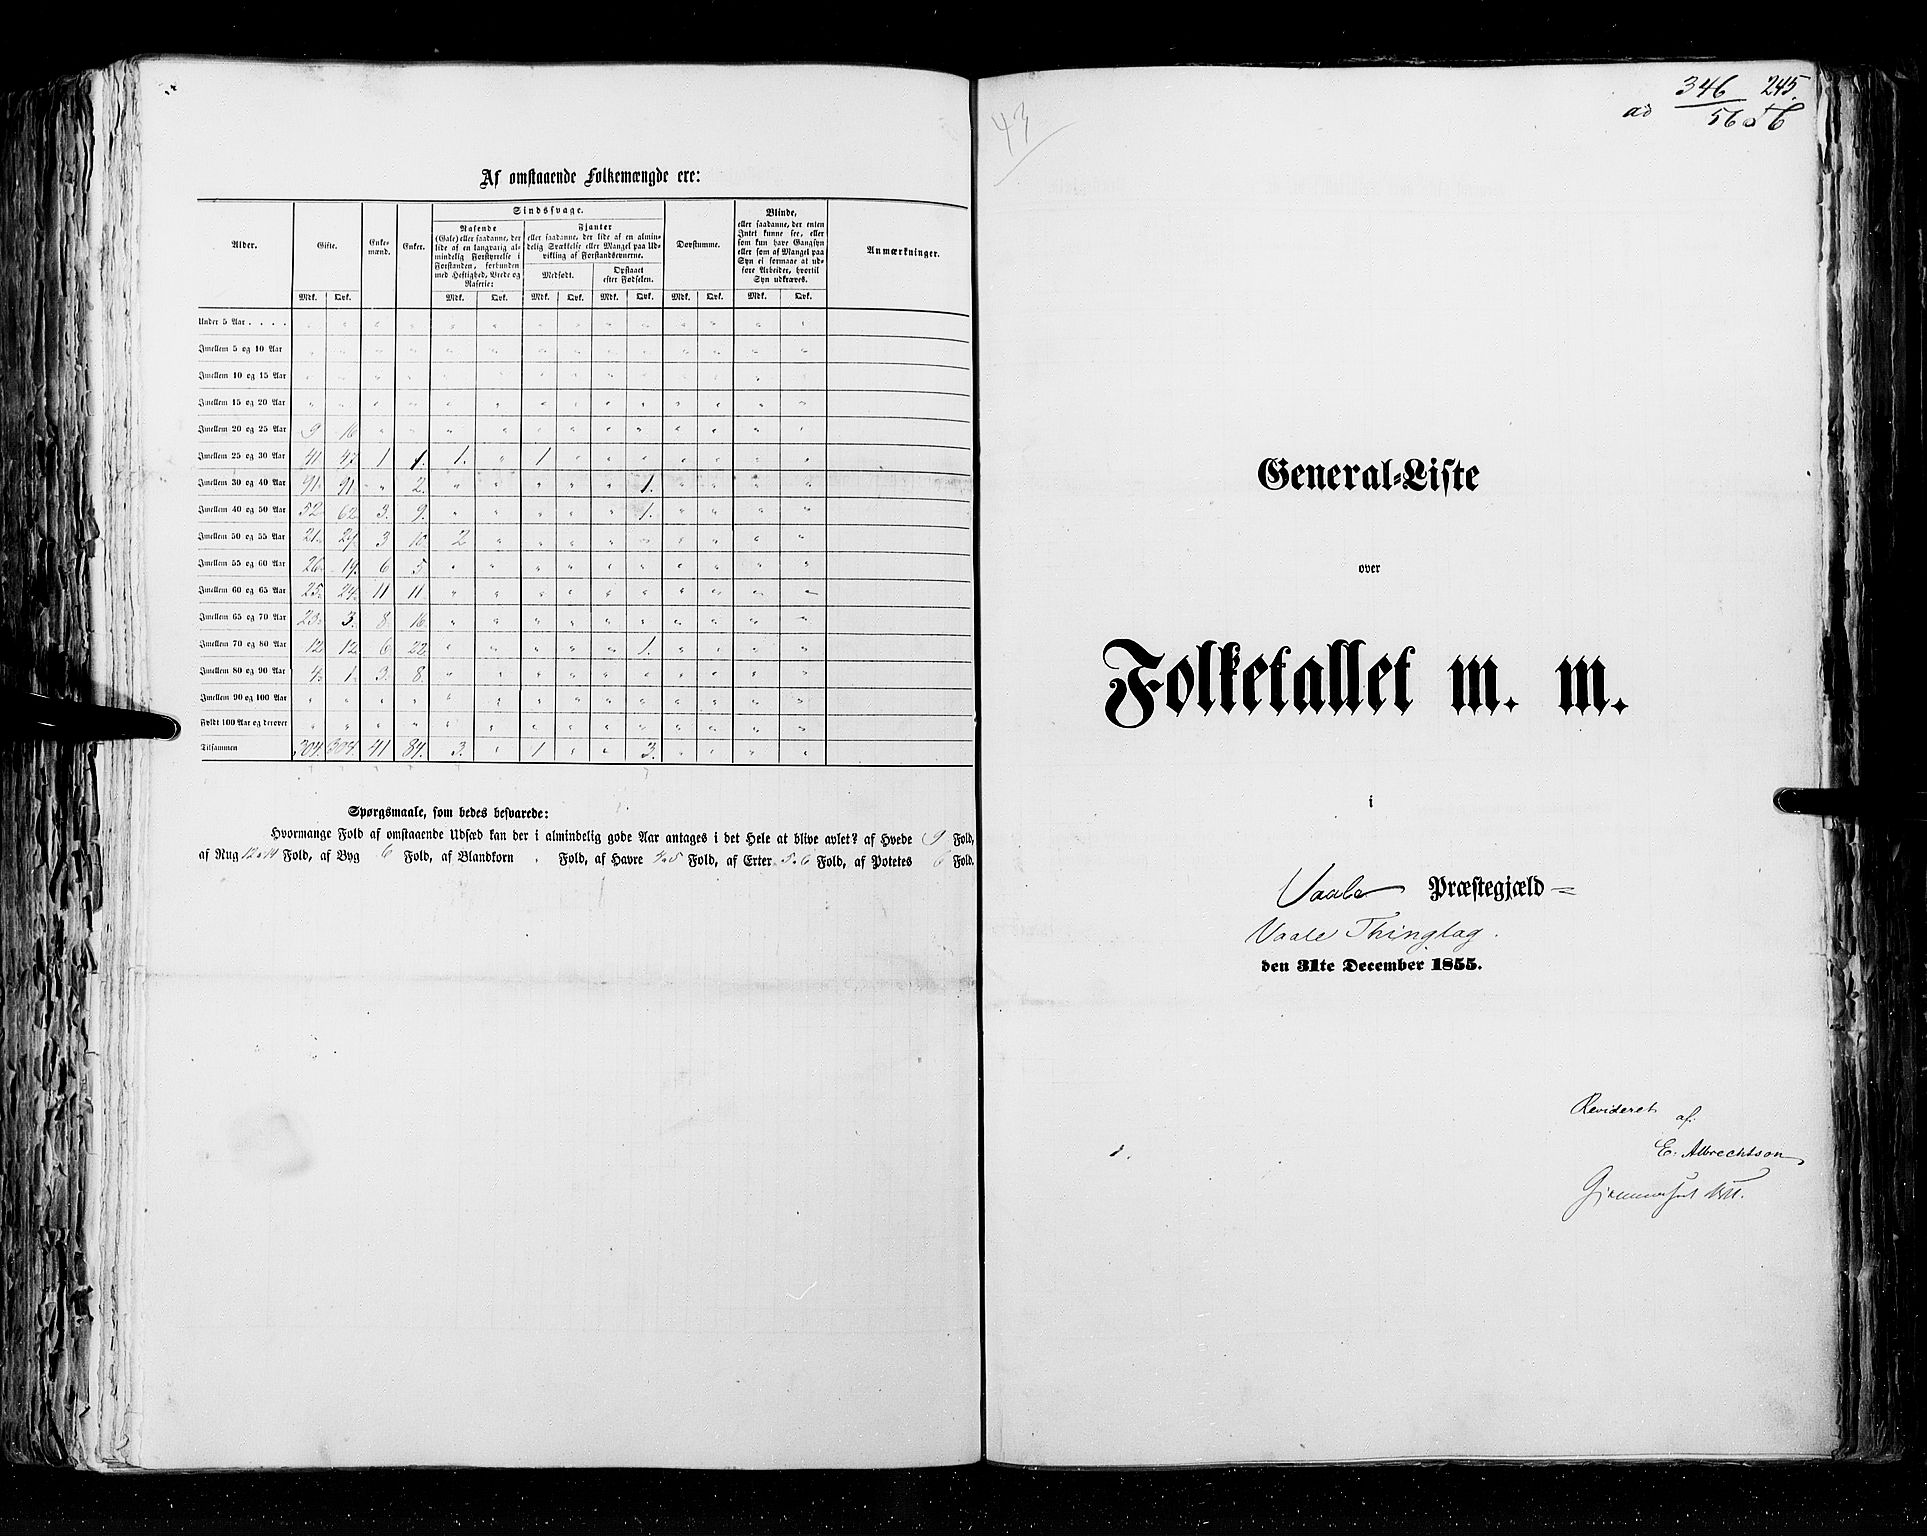 RA, Census 1855, vol. 2: Kristians amt, Buskerud amt og Jarlsberg og Larvik amt, 1855, p. 245